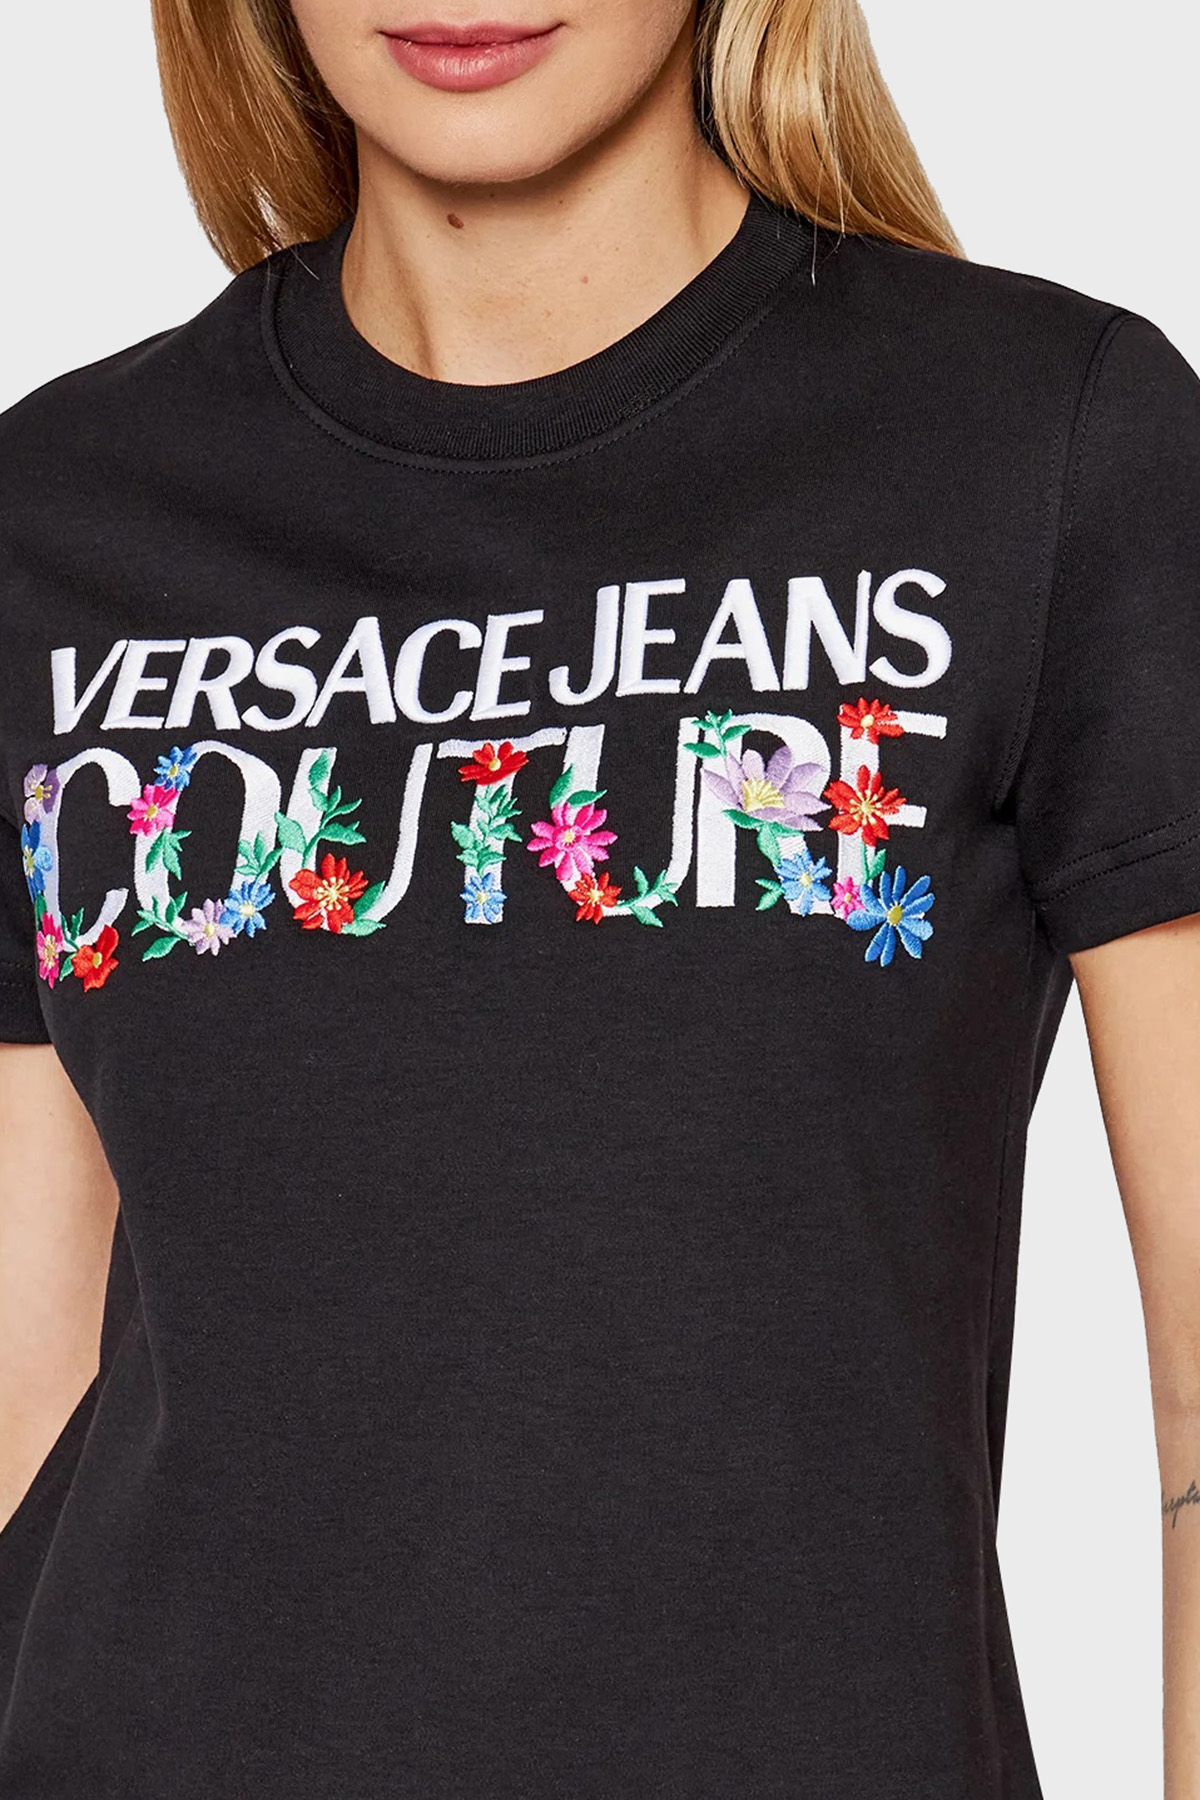 Versace Jeans Couture Pamuklu Baskılı Regular Fit Mini Bayan Elbise 72HAOT11 CJ02T 899 SİYAH